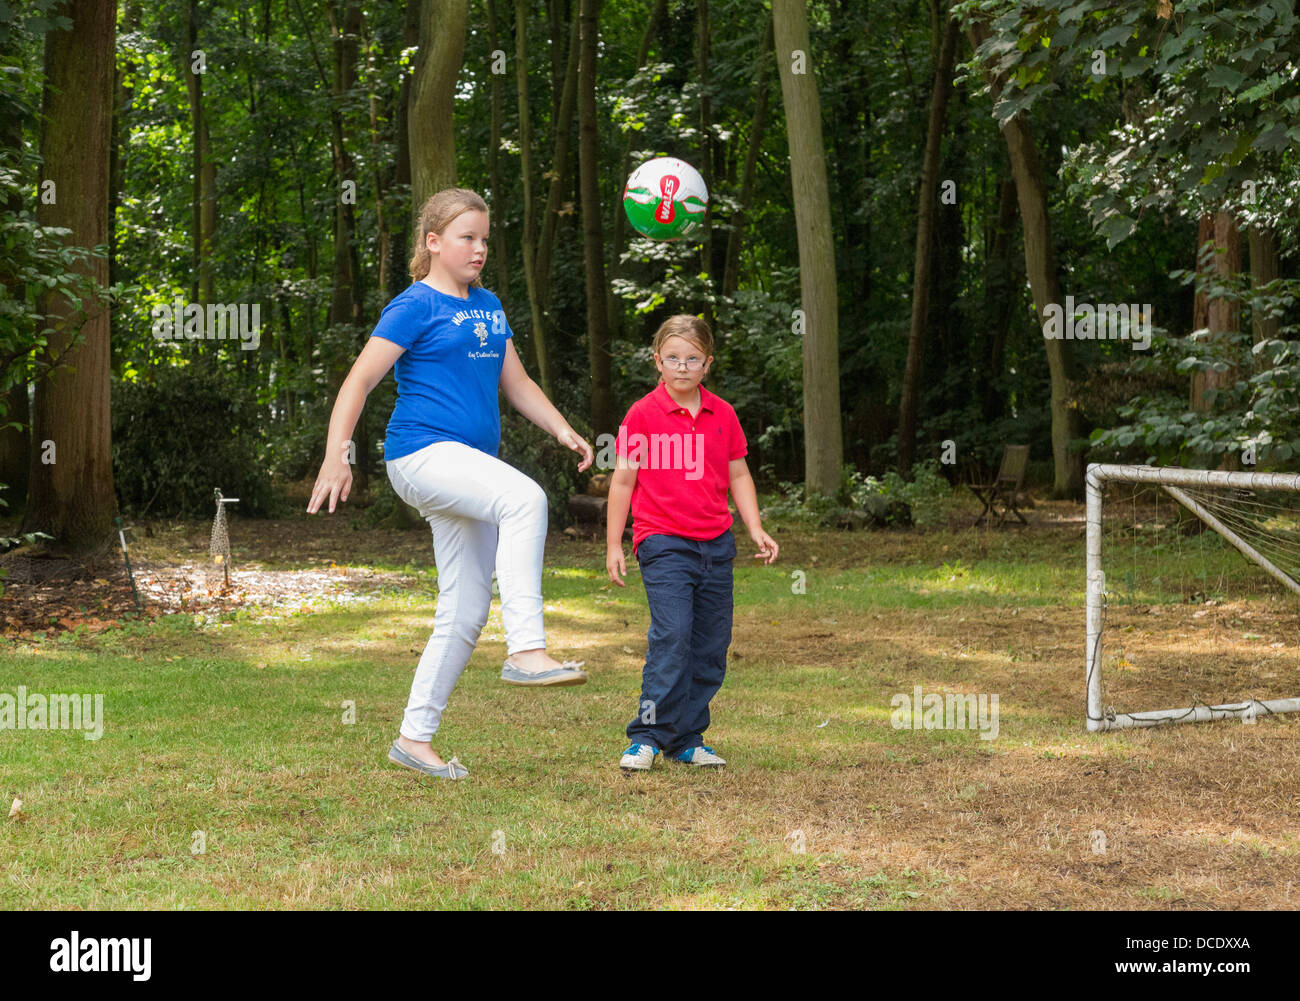 Due giovani ragazze che giocano a calcio nel cortile/giardino Foto Stock